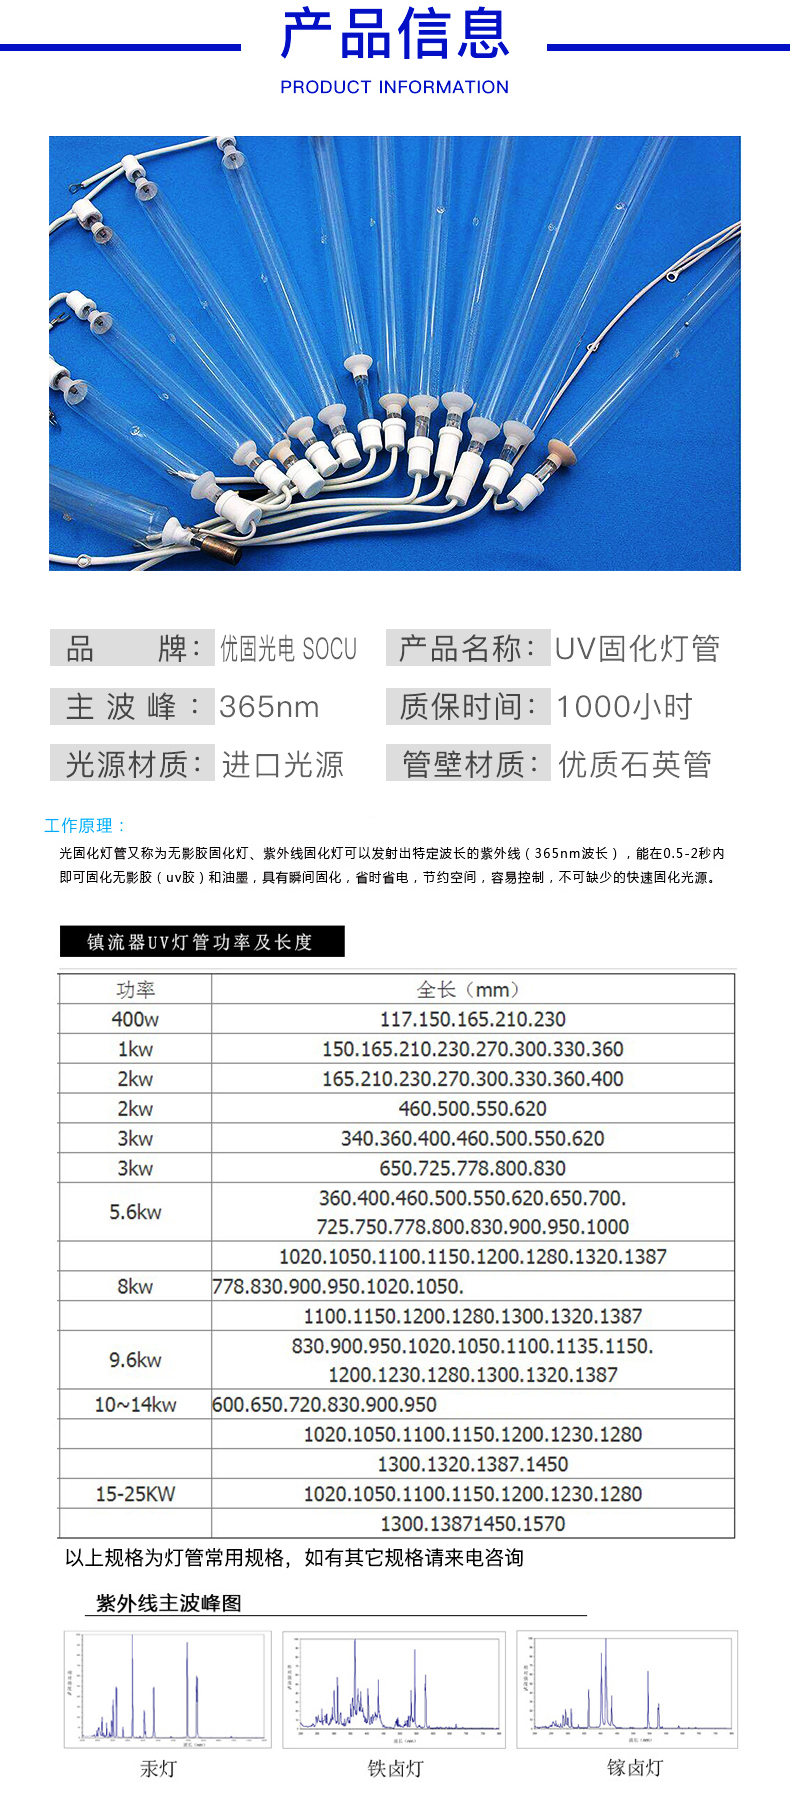 海诺威HanoviaH12K/60c/uv灯管常用规格表